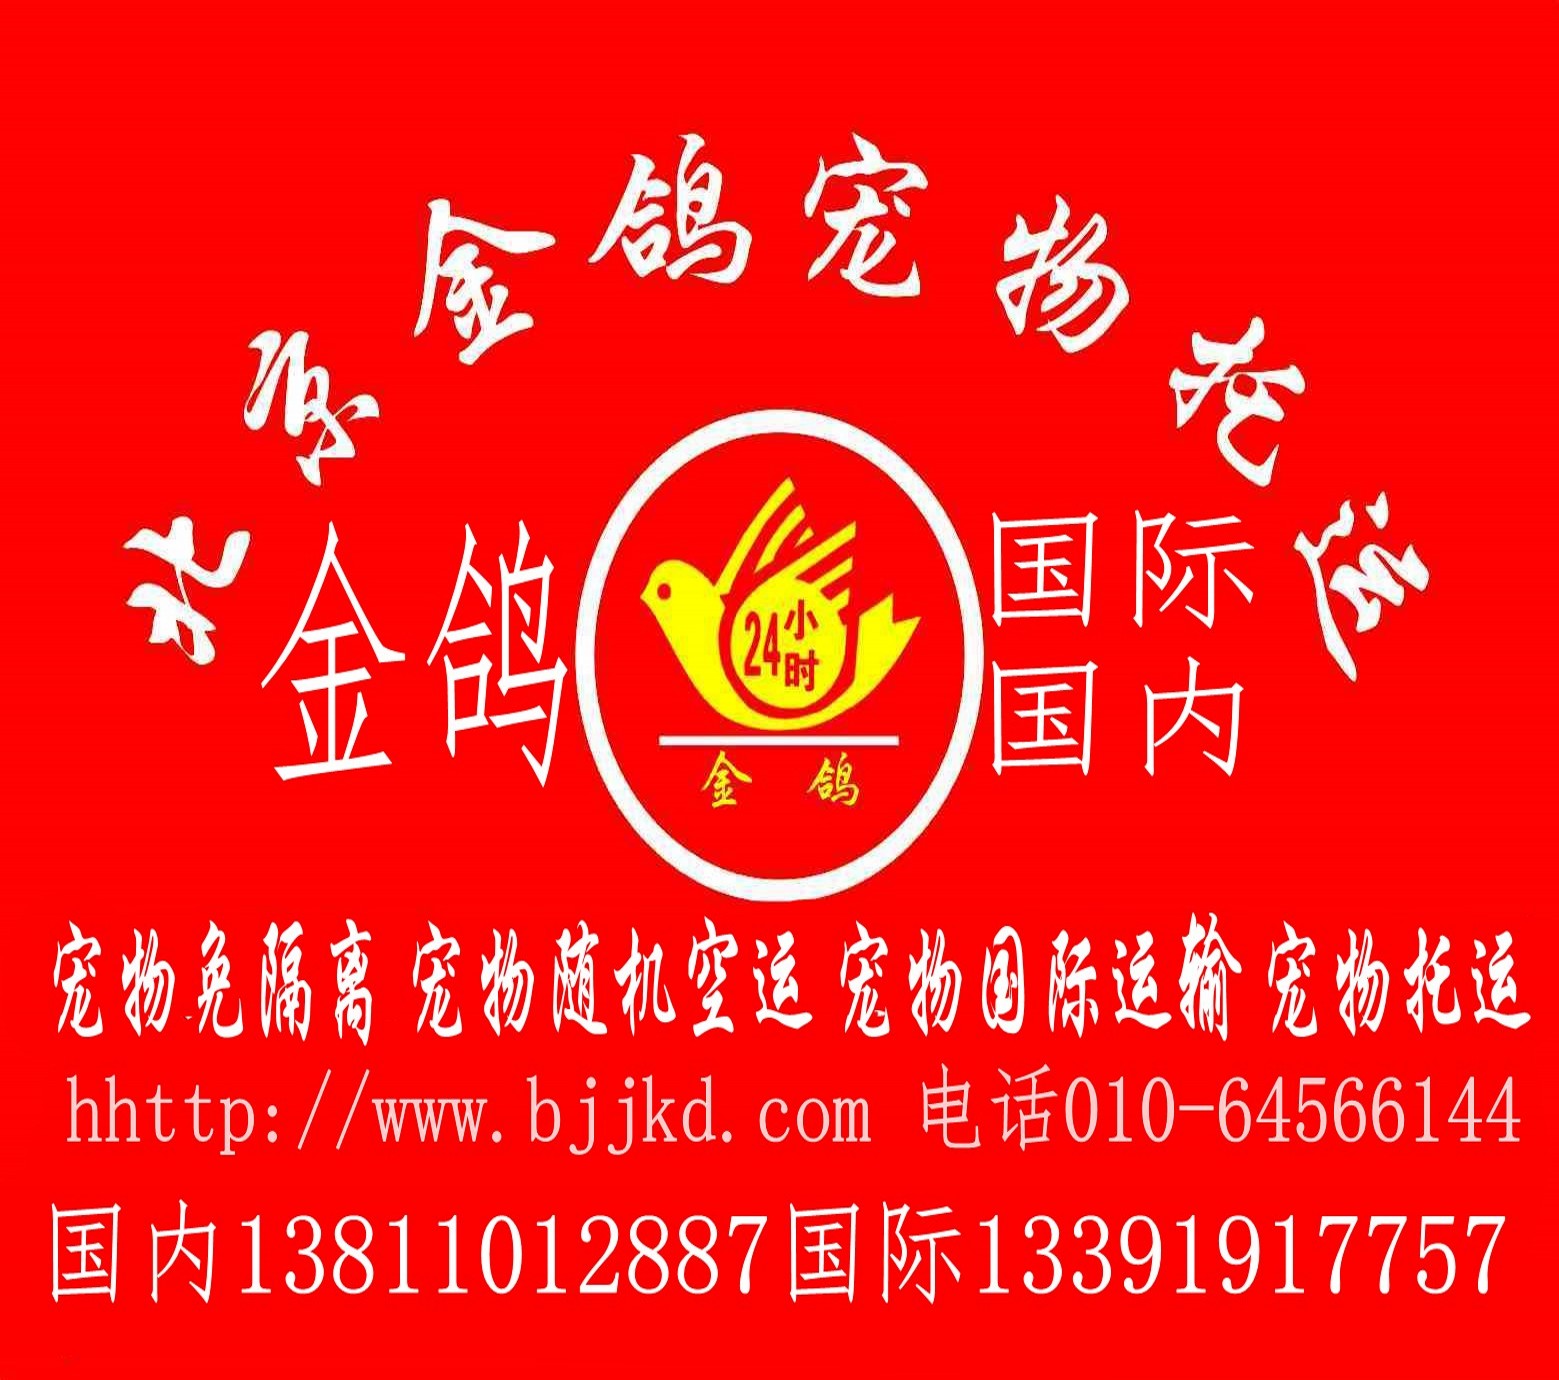 北京金鸽宠物托运国际运输 北京宠物托运国际运输宠物空运